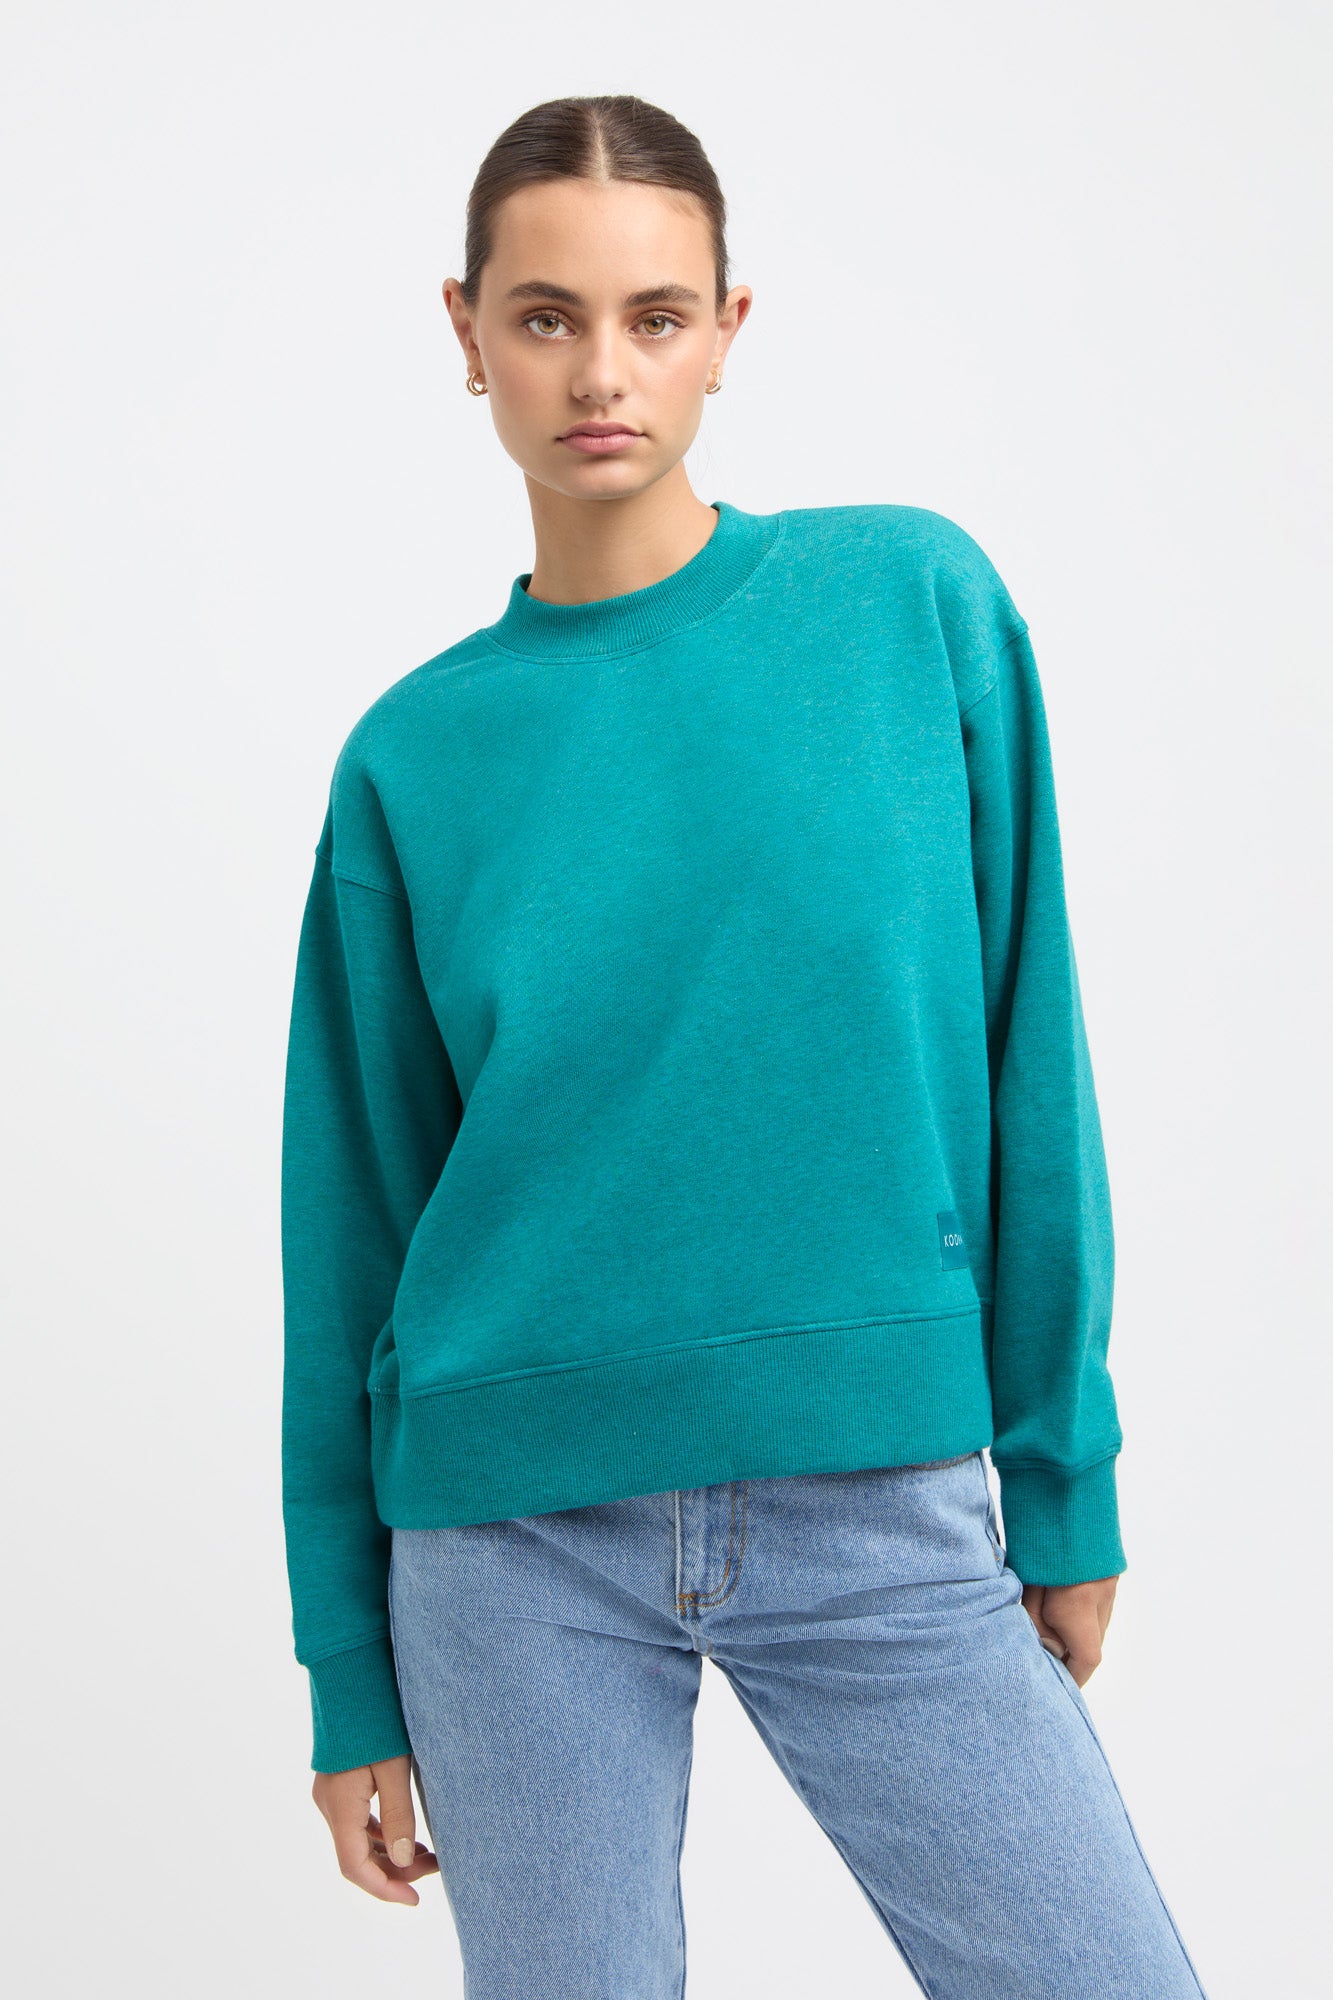  Teal Sweater